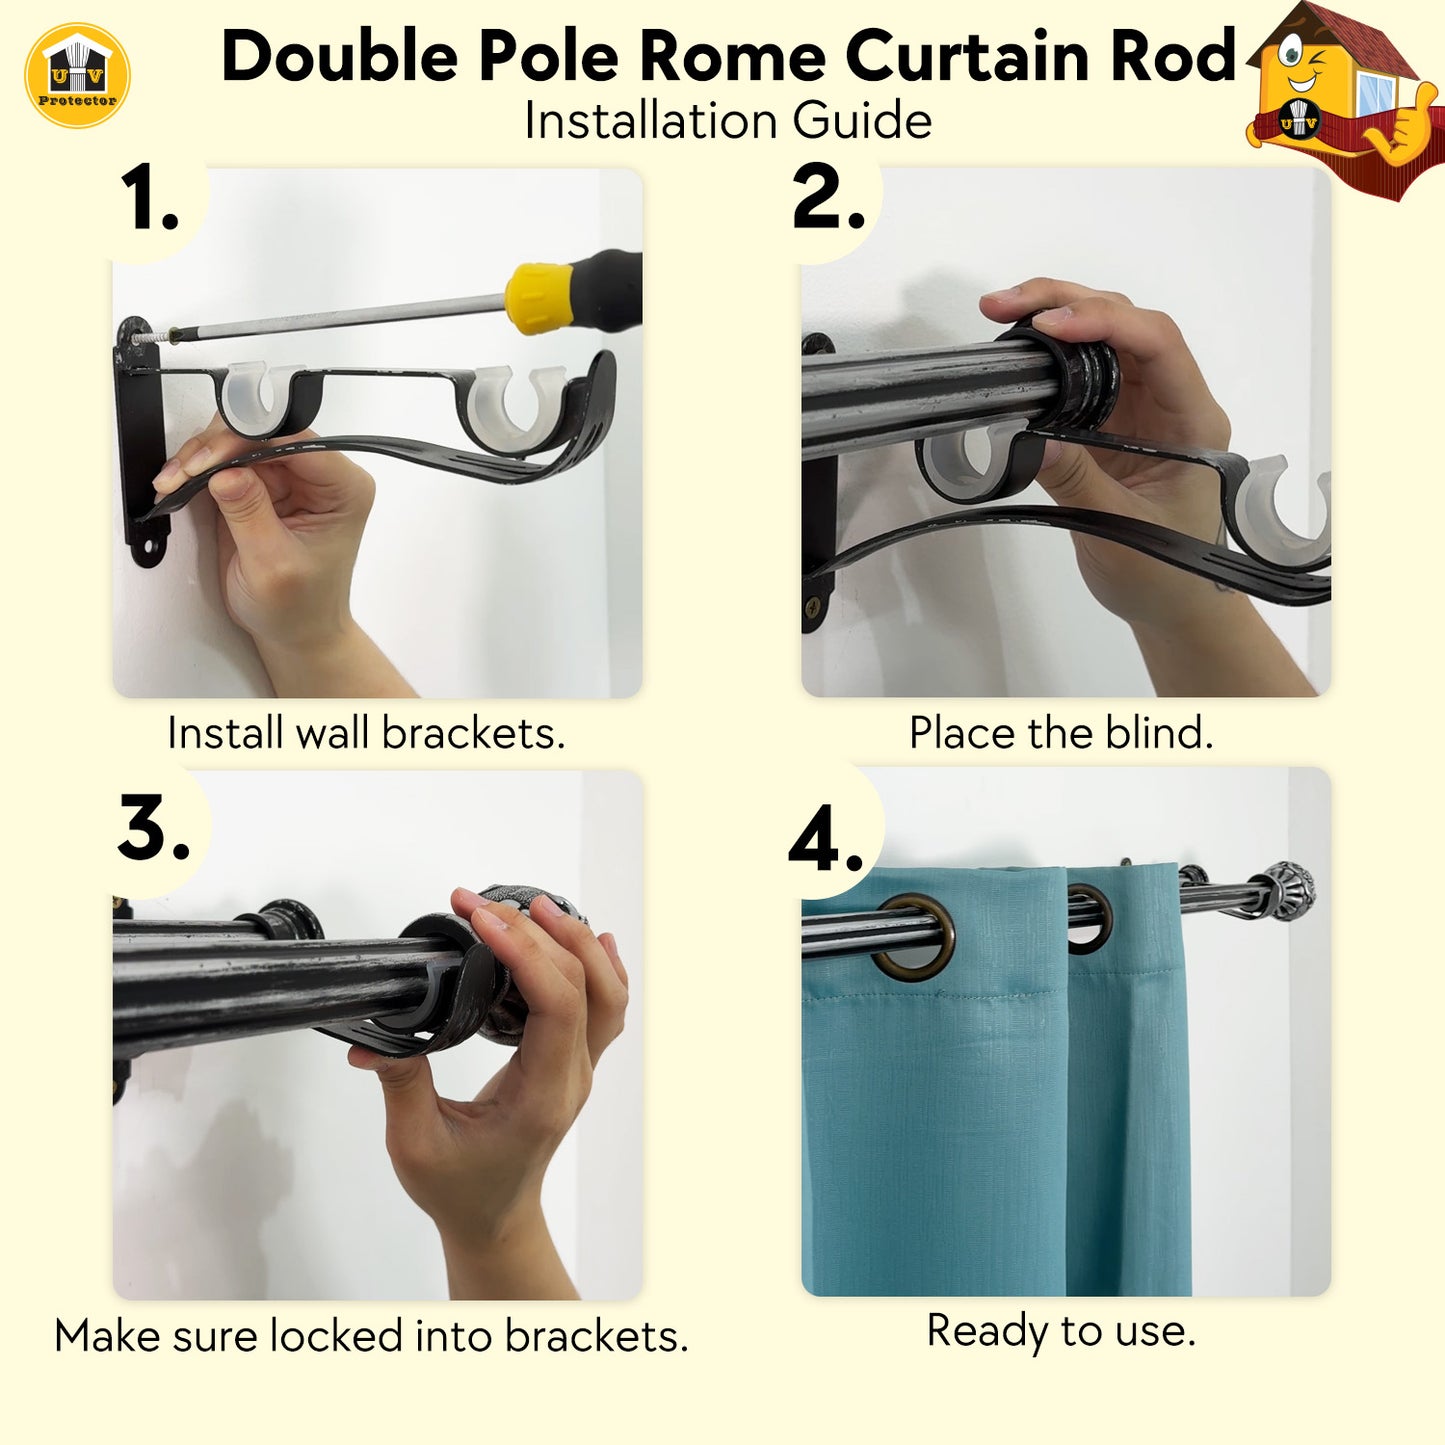 UVP Curtain Double Pole Rome Curtain Rod